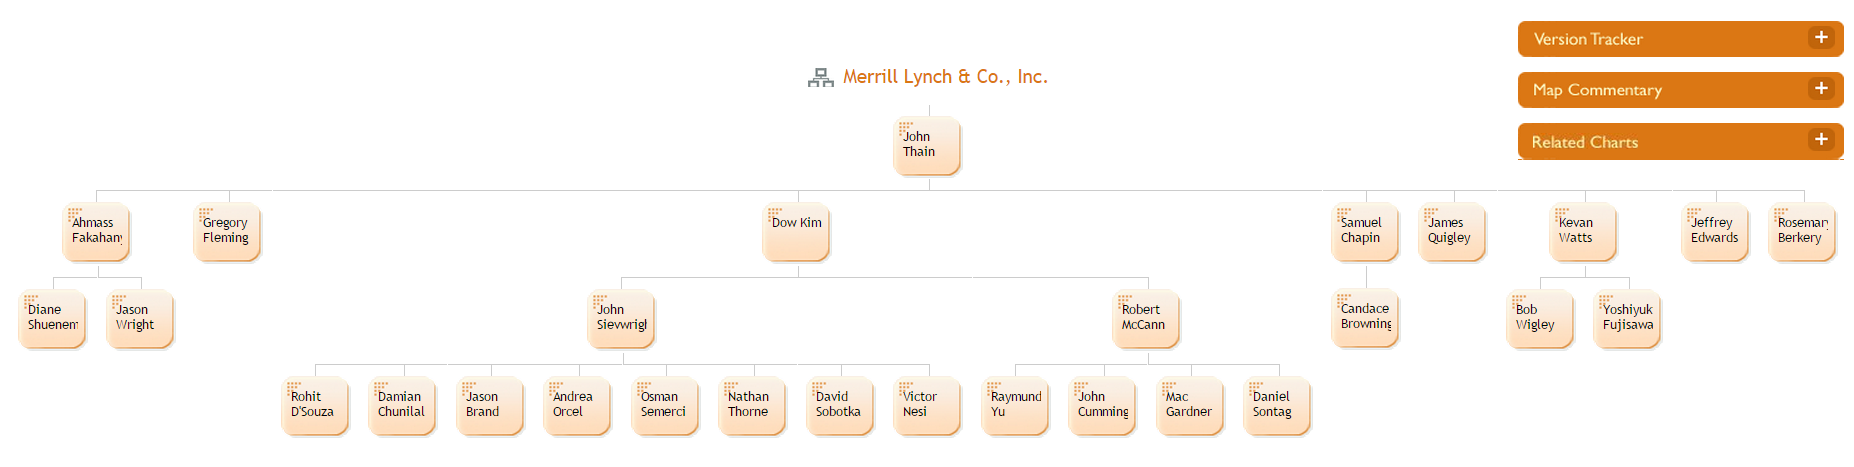 Wells Fargo Organizational Chart